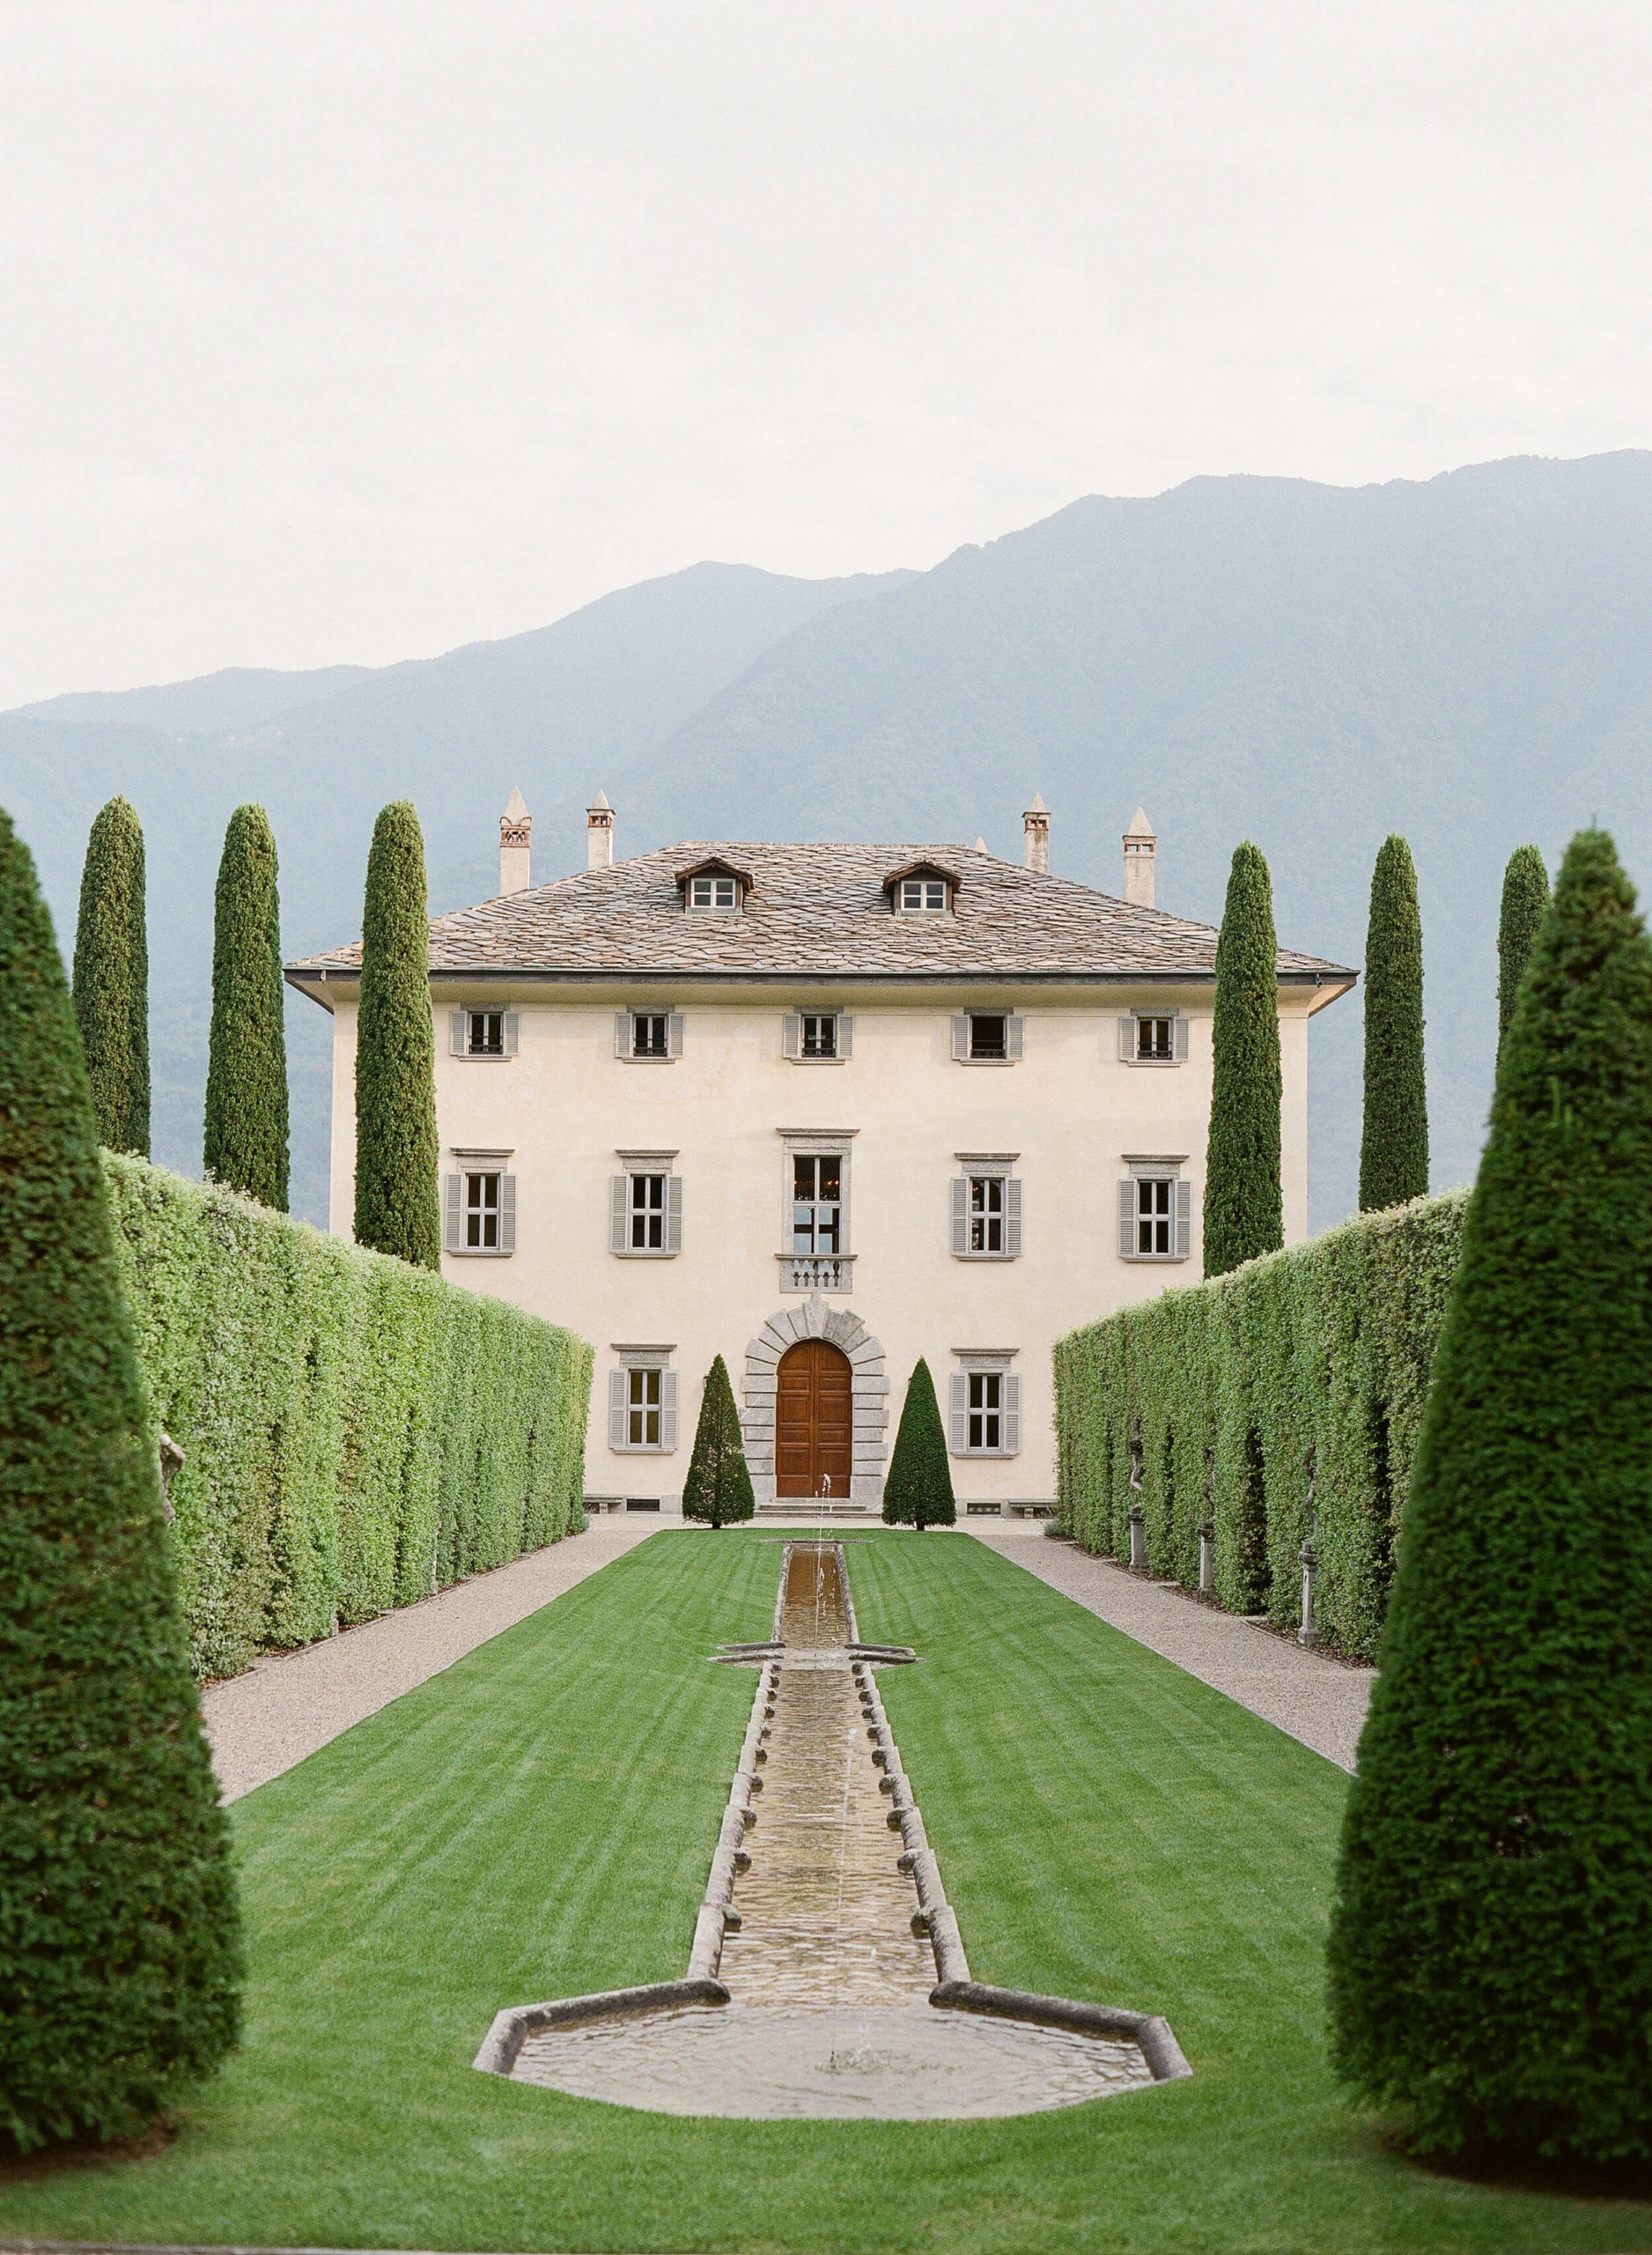 Villa Balbiano in Lombardy, Italy